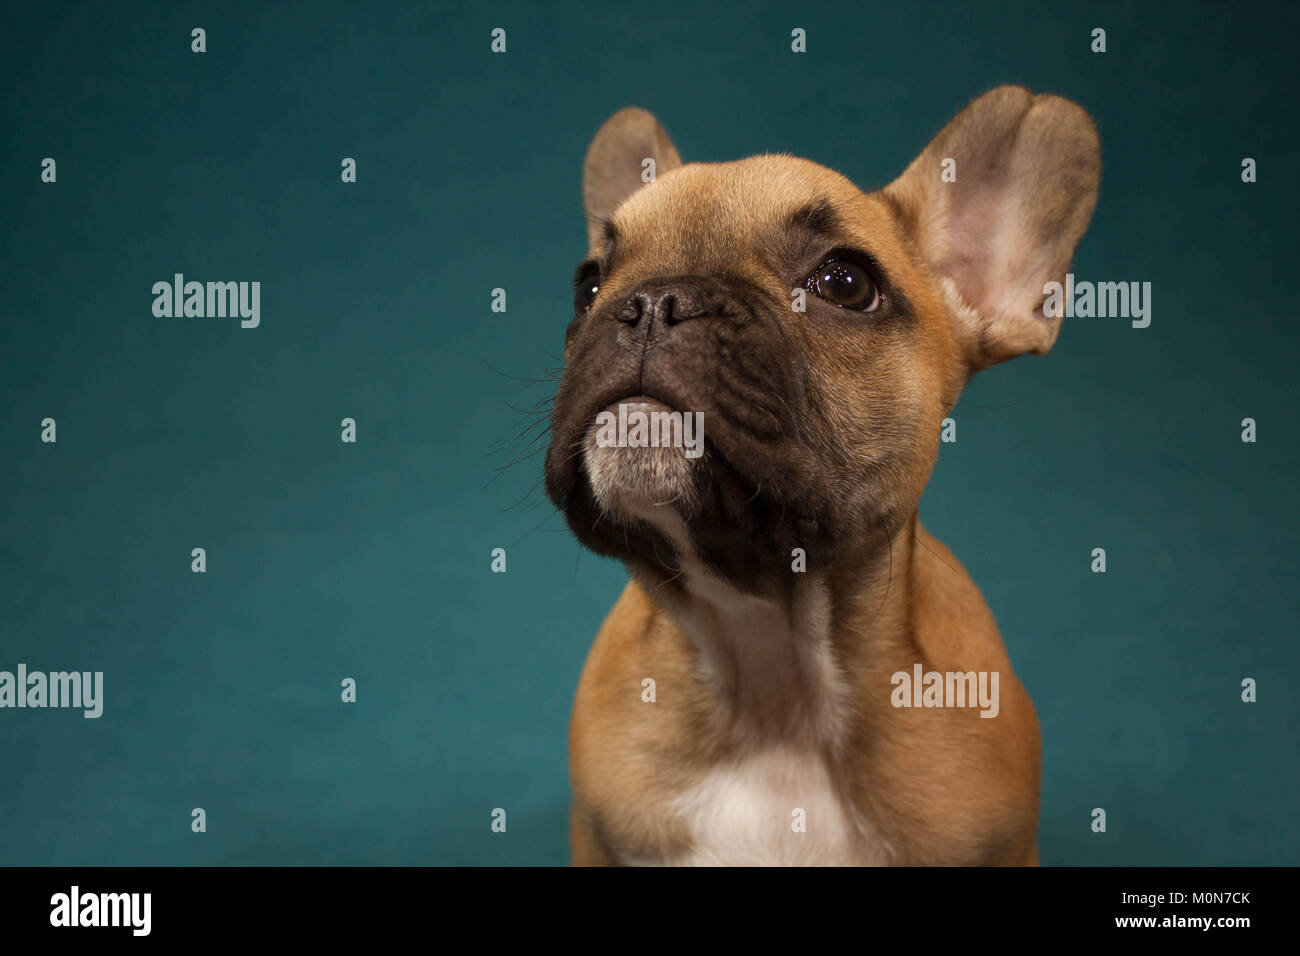 Bulldog francese cucciolo ritratto guardando la telecamera, studio di fotografia in background turchine Foto Stock